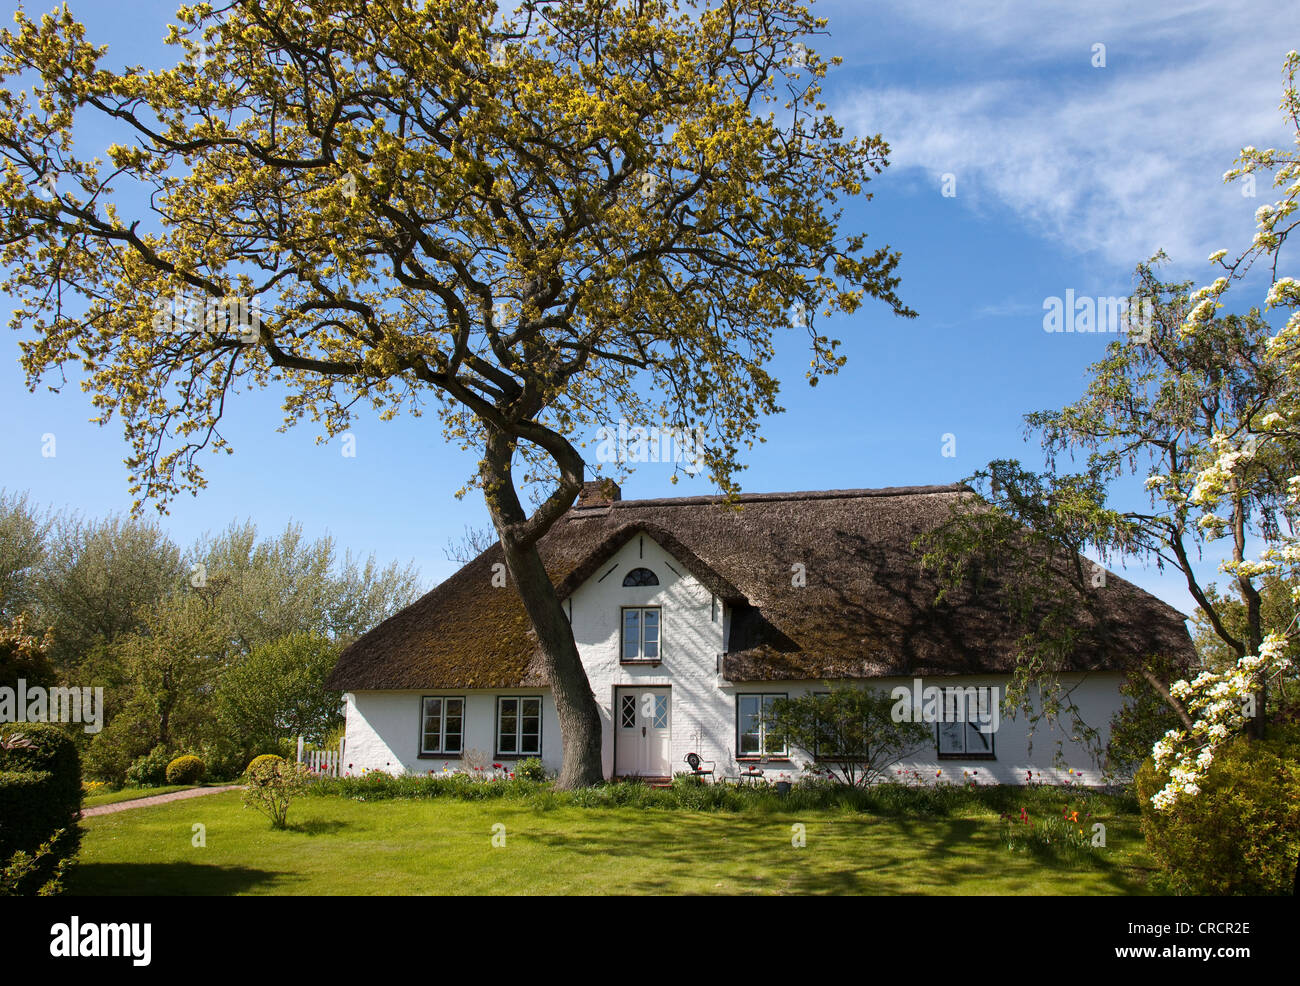 Chaumière avec arbres en fleurs et un pré vert, Eiderstedt, Schleswig-Holstein, Allemagne, Europe Banque D'Images